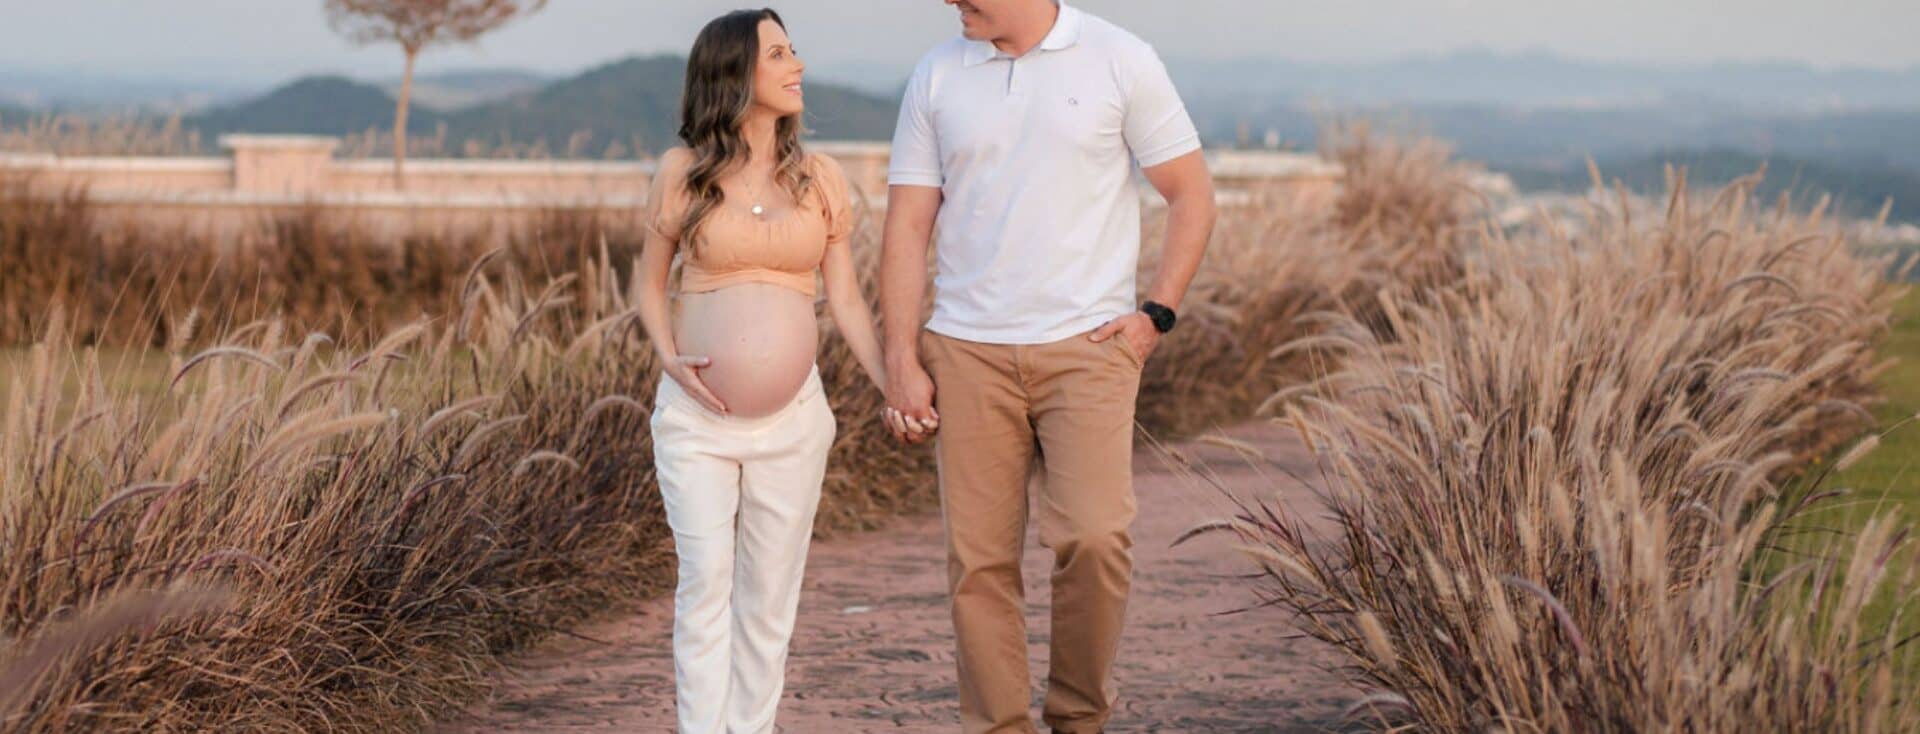 Imagem de uma casal andando de mãos dadas. Eles estão sorrindo e olhando um para o outro. A mulher está grávida e segura a barriga com a mão direita. O homem está com a mão no bolso da calça.